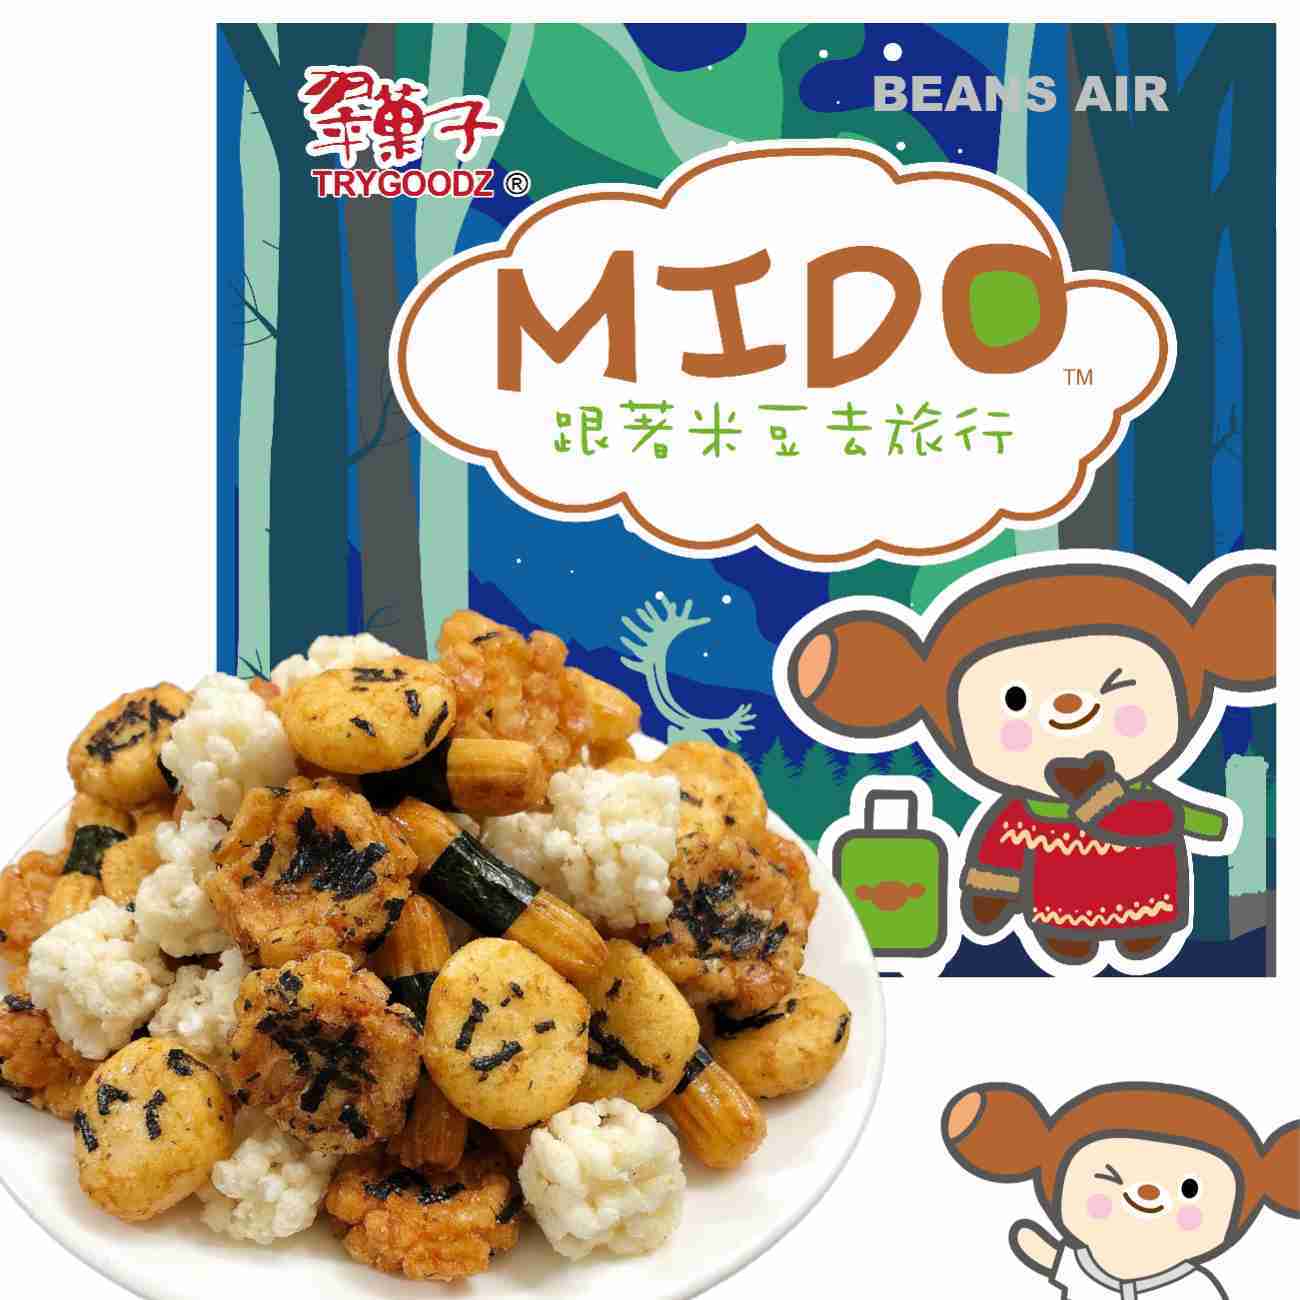 【MIDO】翠菓子 翠果子 航空綜合米果 /經濟艙/商務艙/頭等艙/日式綜合米果/相撲米果 豆之家 量販包 機上點心